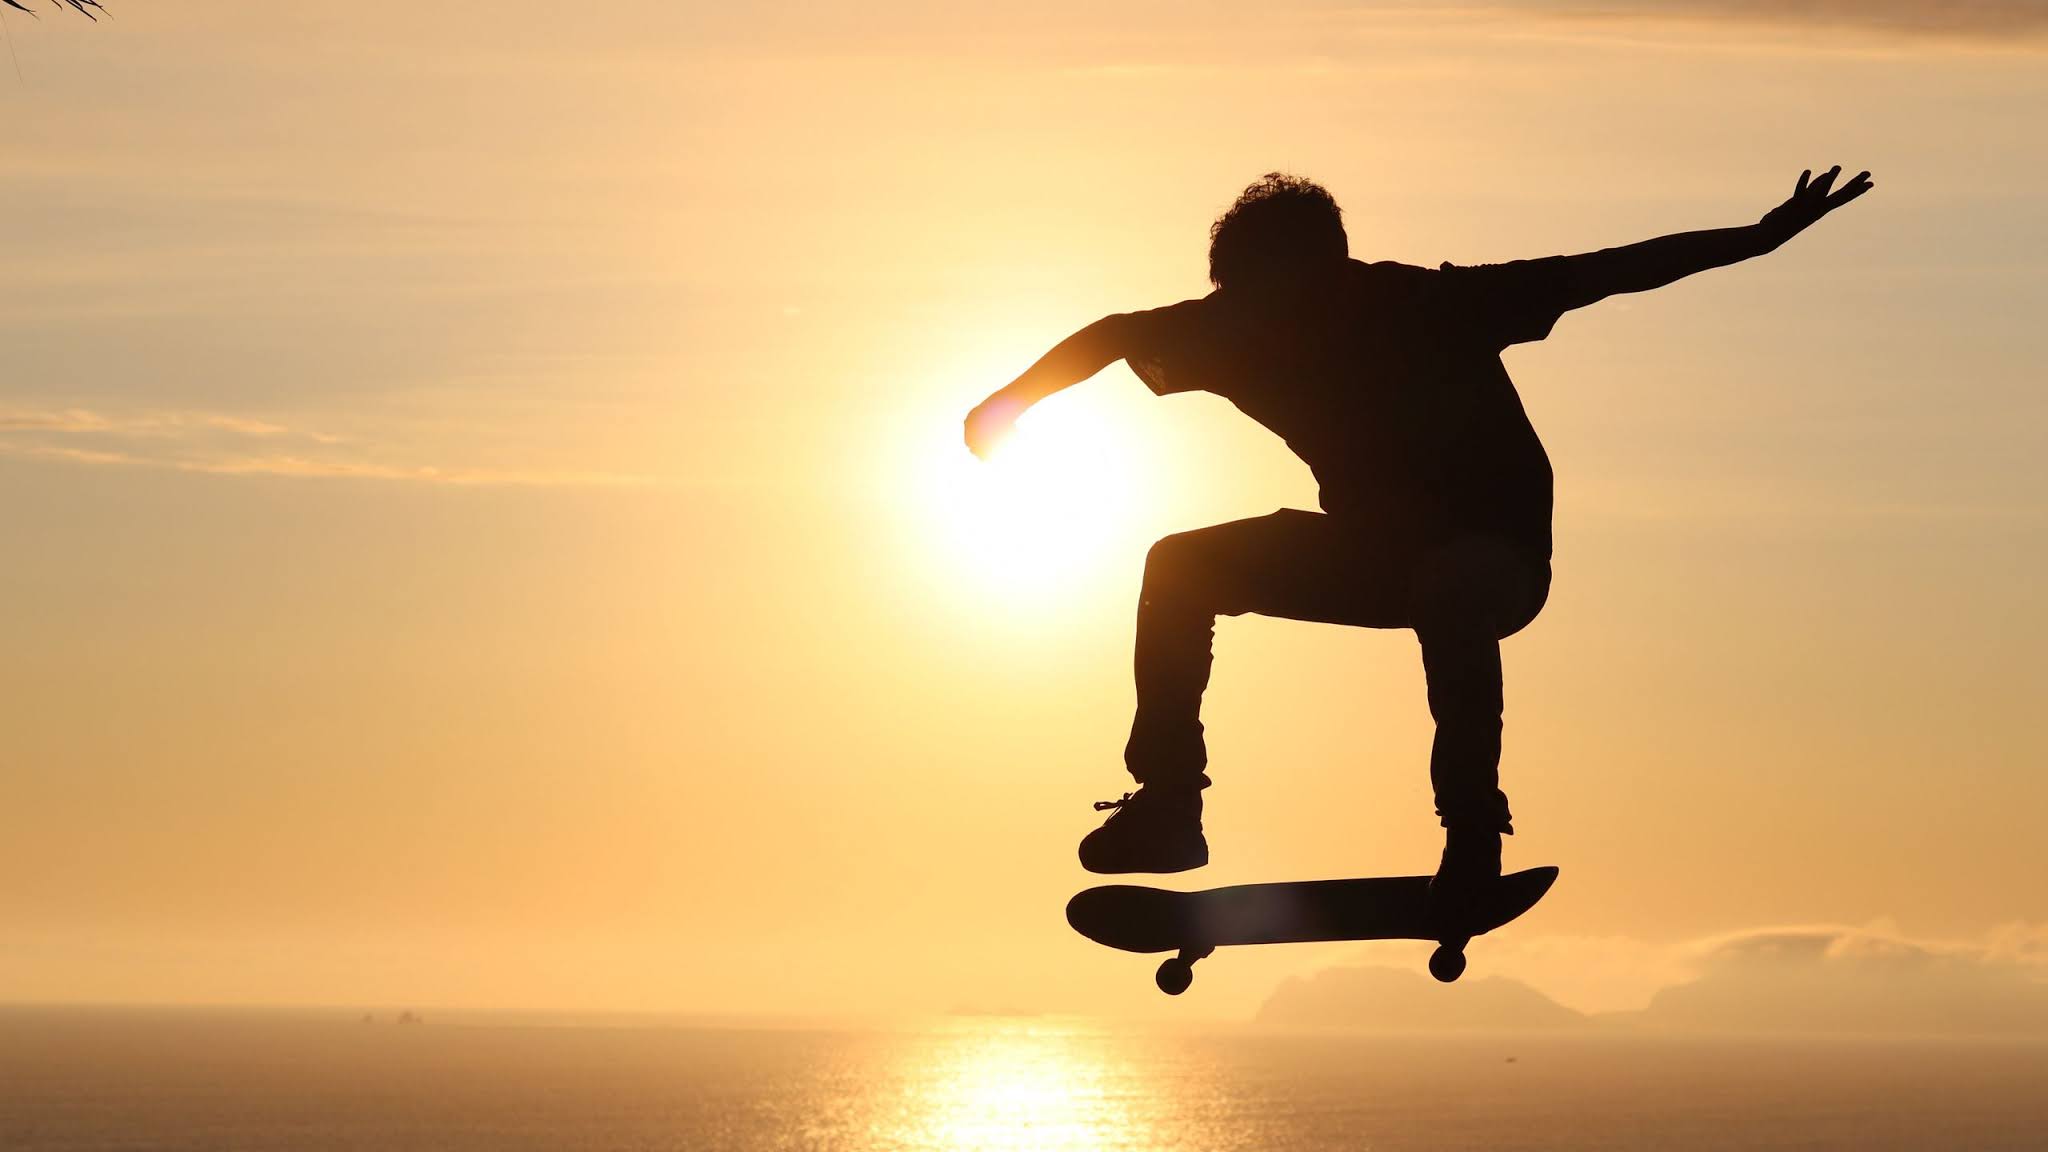 Free Wallpaper Skateboard, Skate, Skater, Silhouette, Sunset